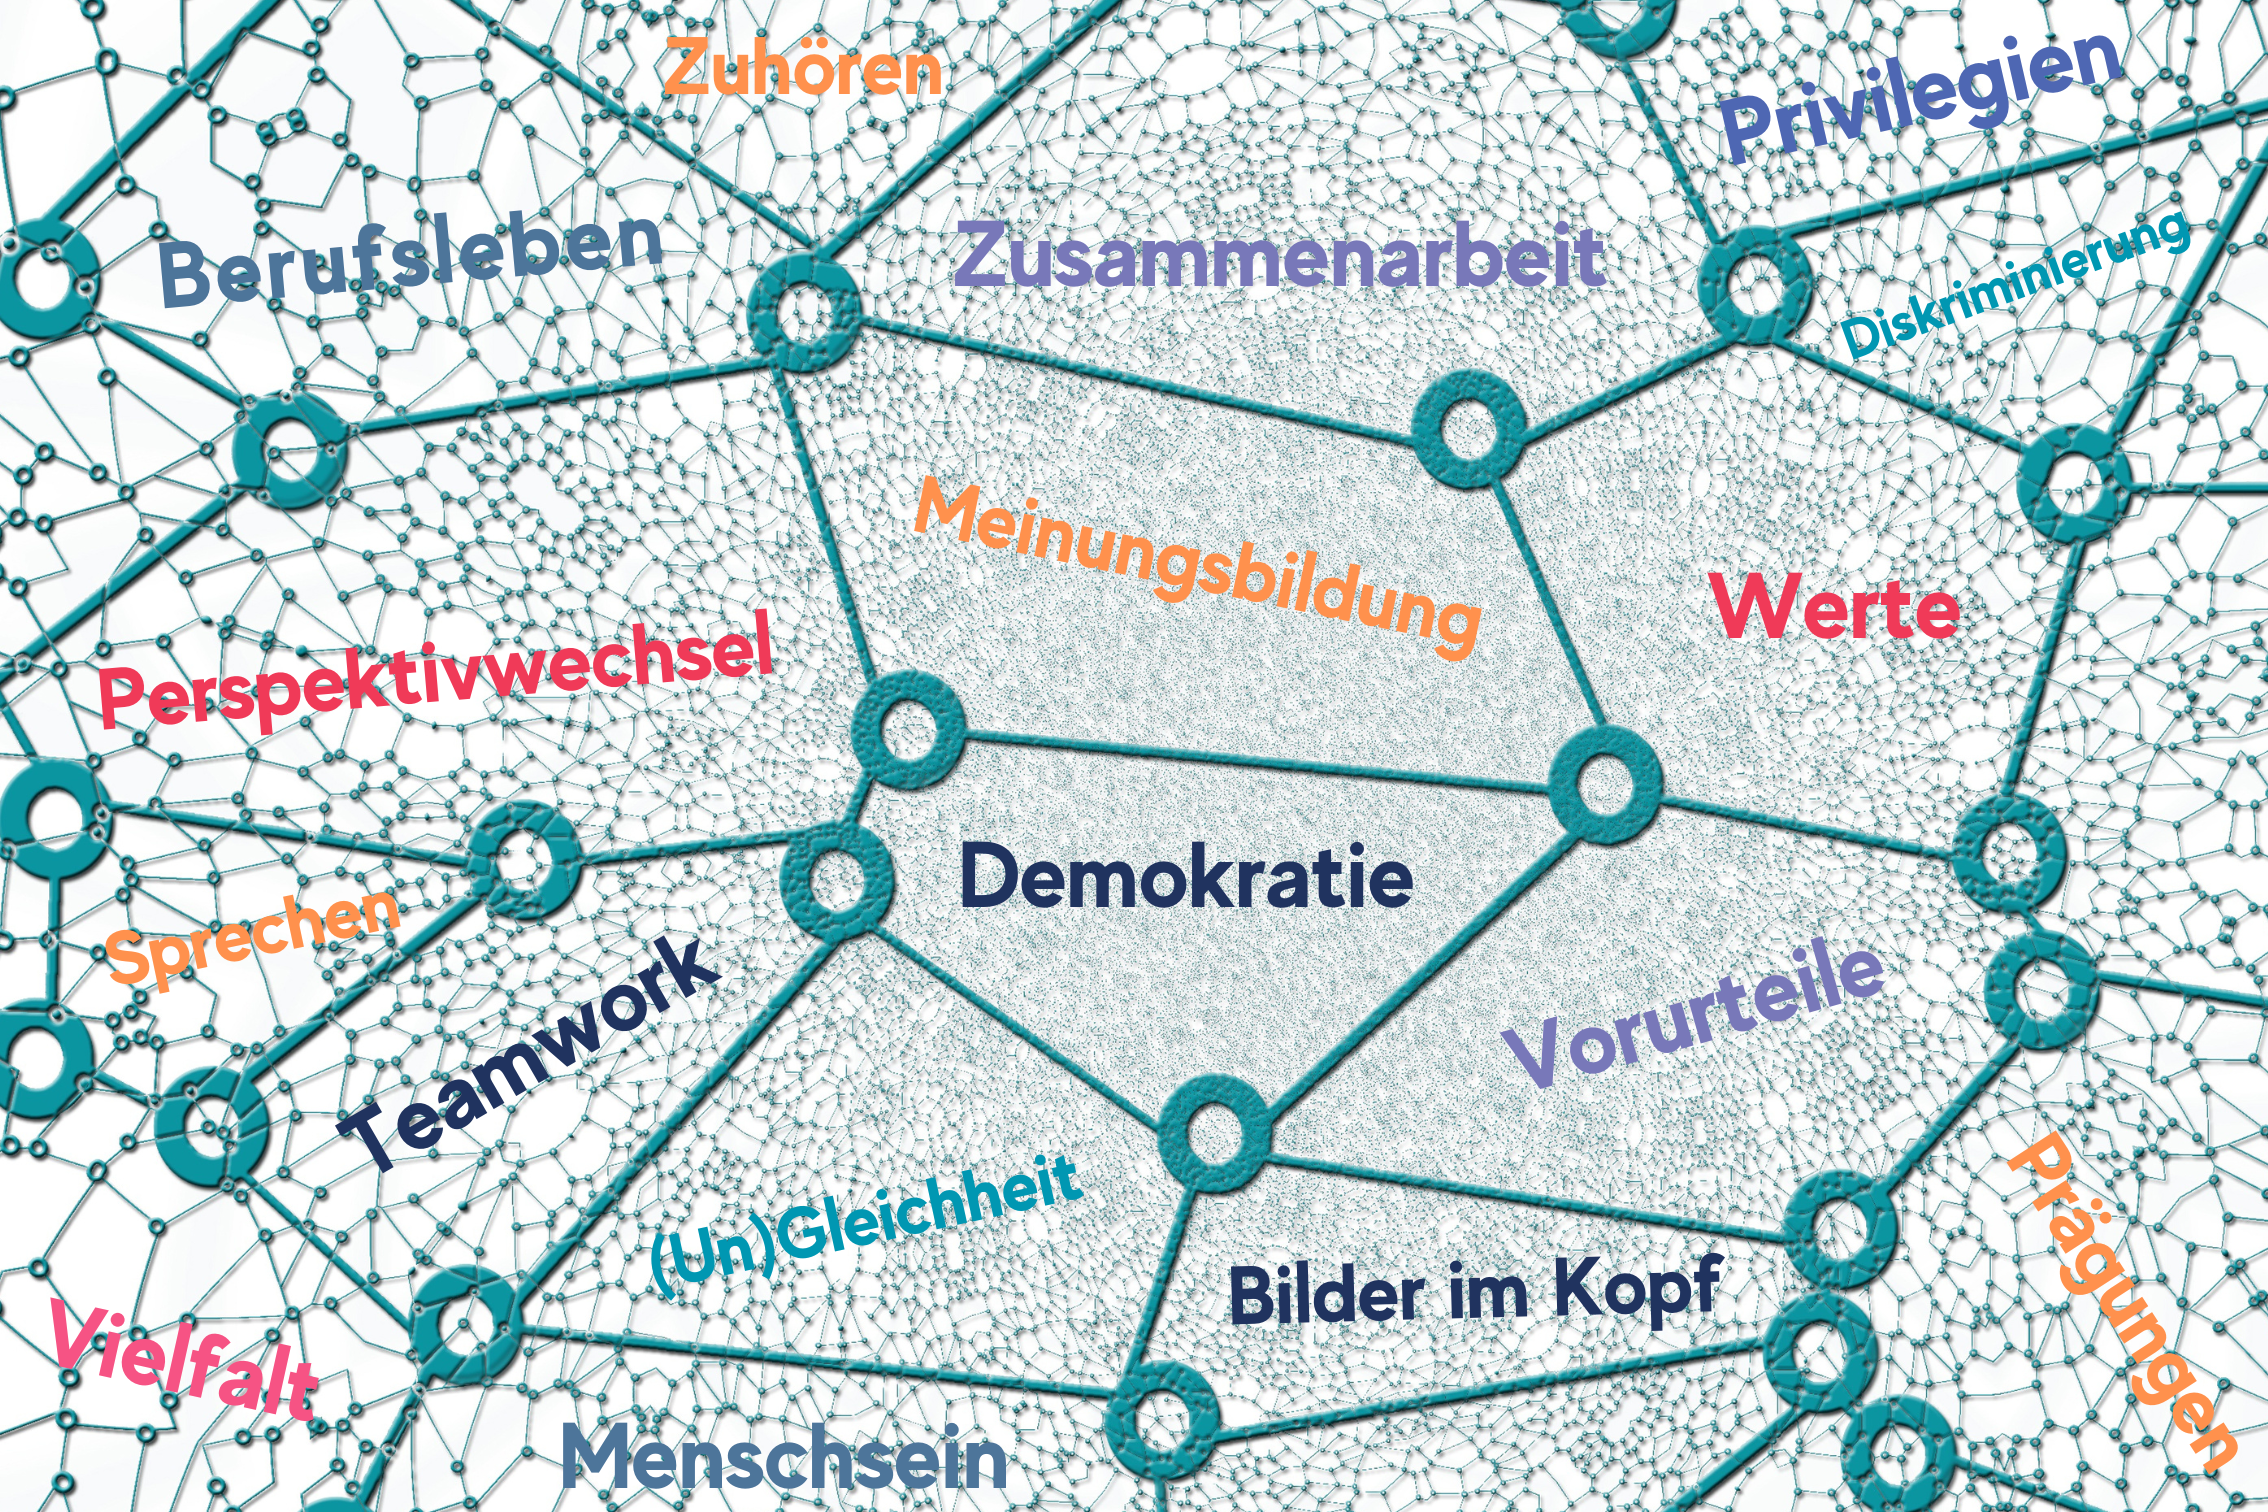 eine Grafik, die ein Netzwerk aus verschiedenen Knotenpunkten zeigt, in den Freiflächen stehen Schlagworte zu den Veranstaltungsthemen, wie Demokratie, Vielfalt & Diskriminierung